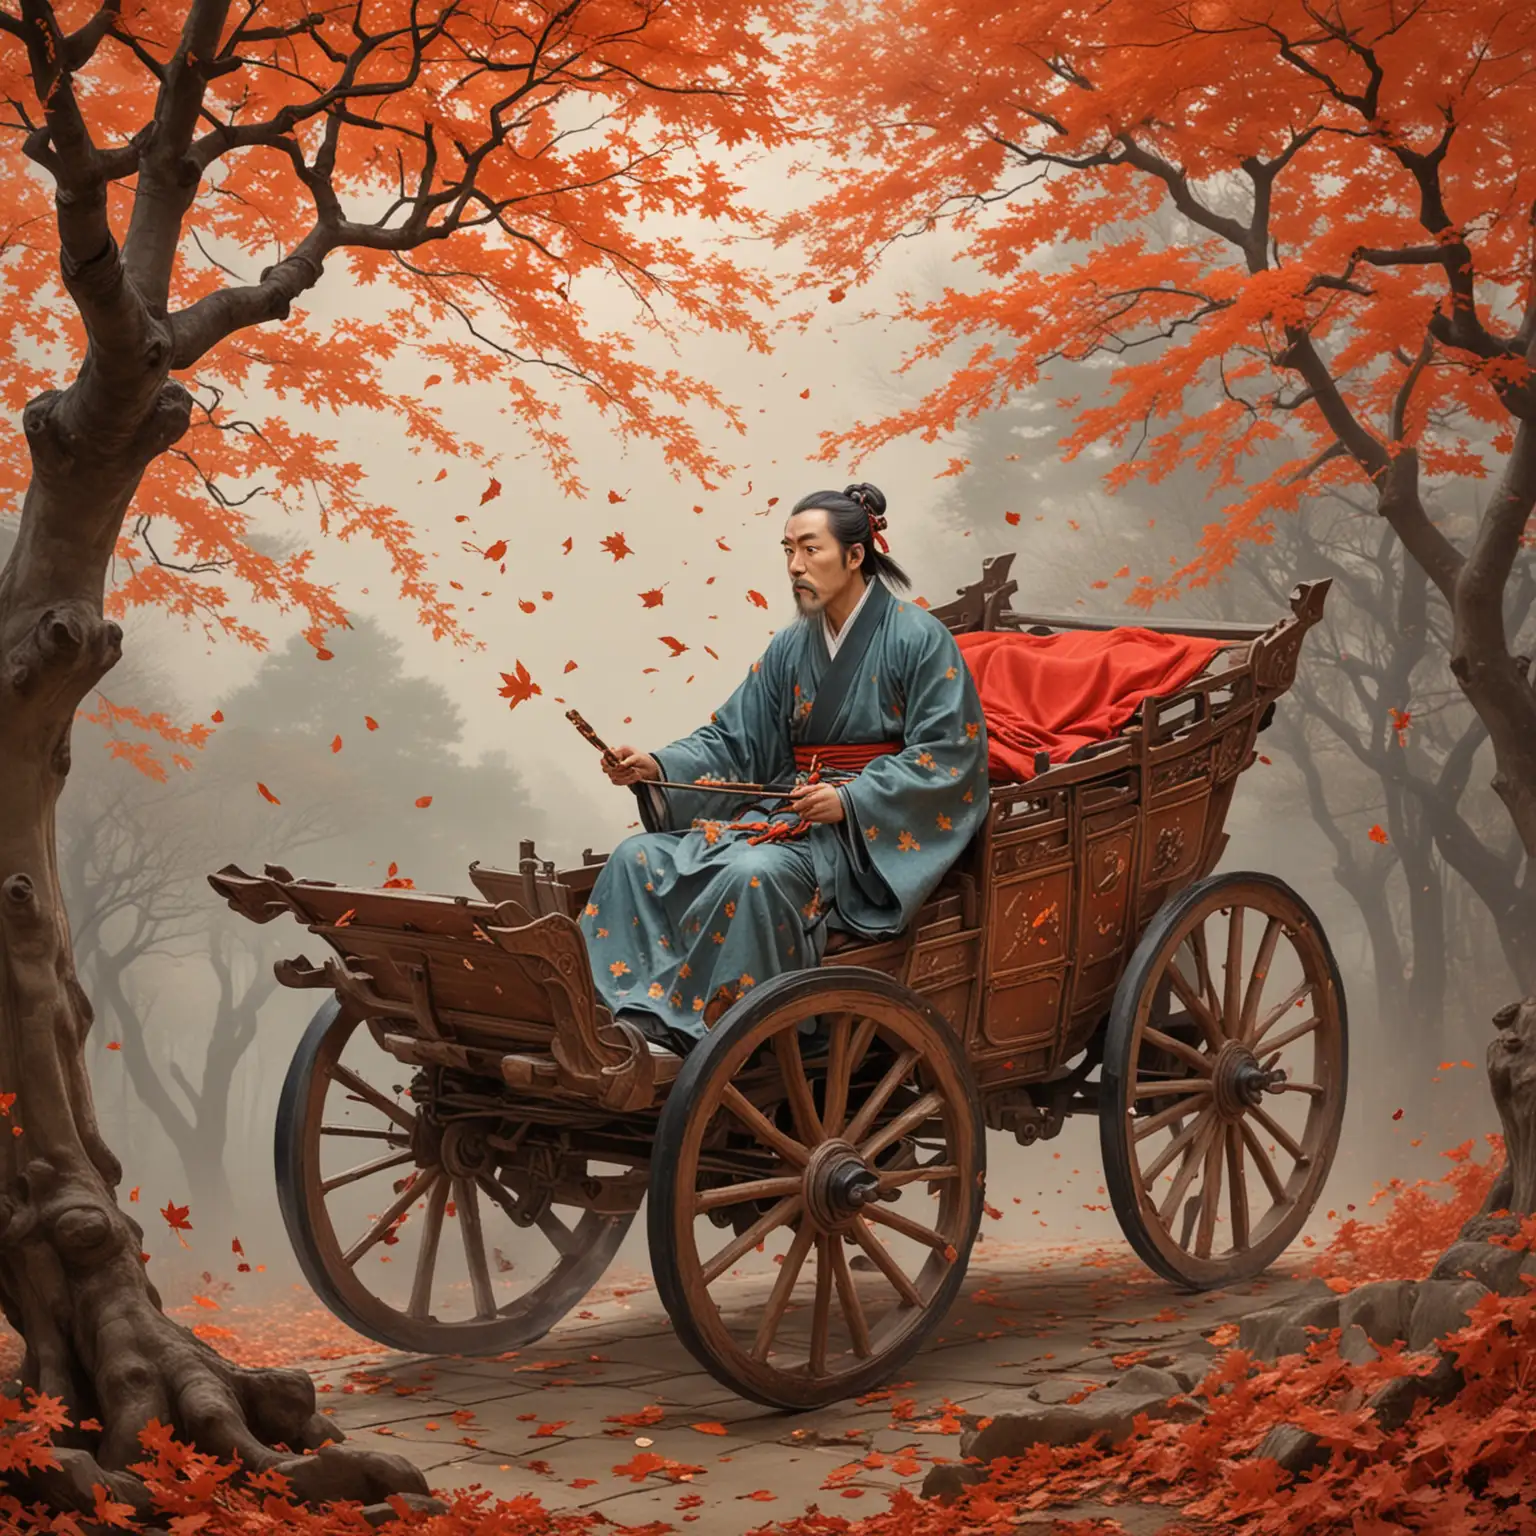 杜牧坐在马车里面看到漫天的枫叶，所以写下了《山行》。要求出现古诗里面的画面